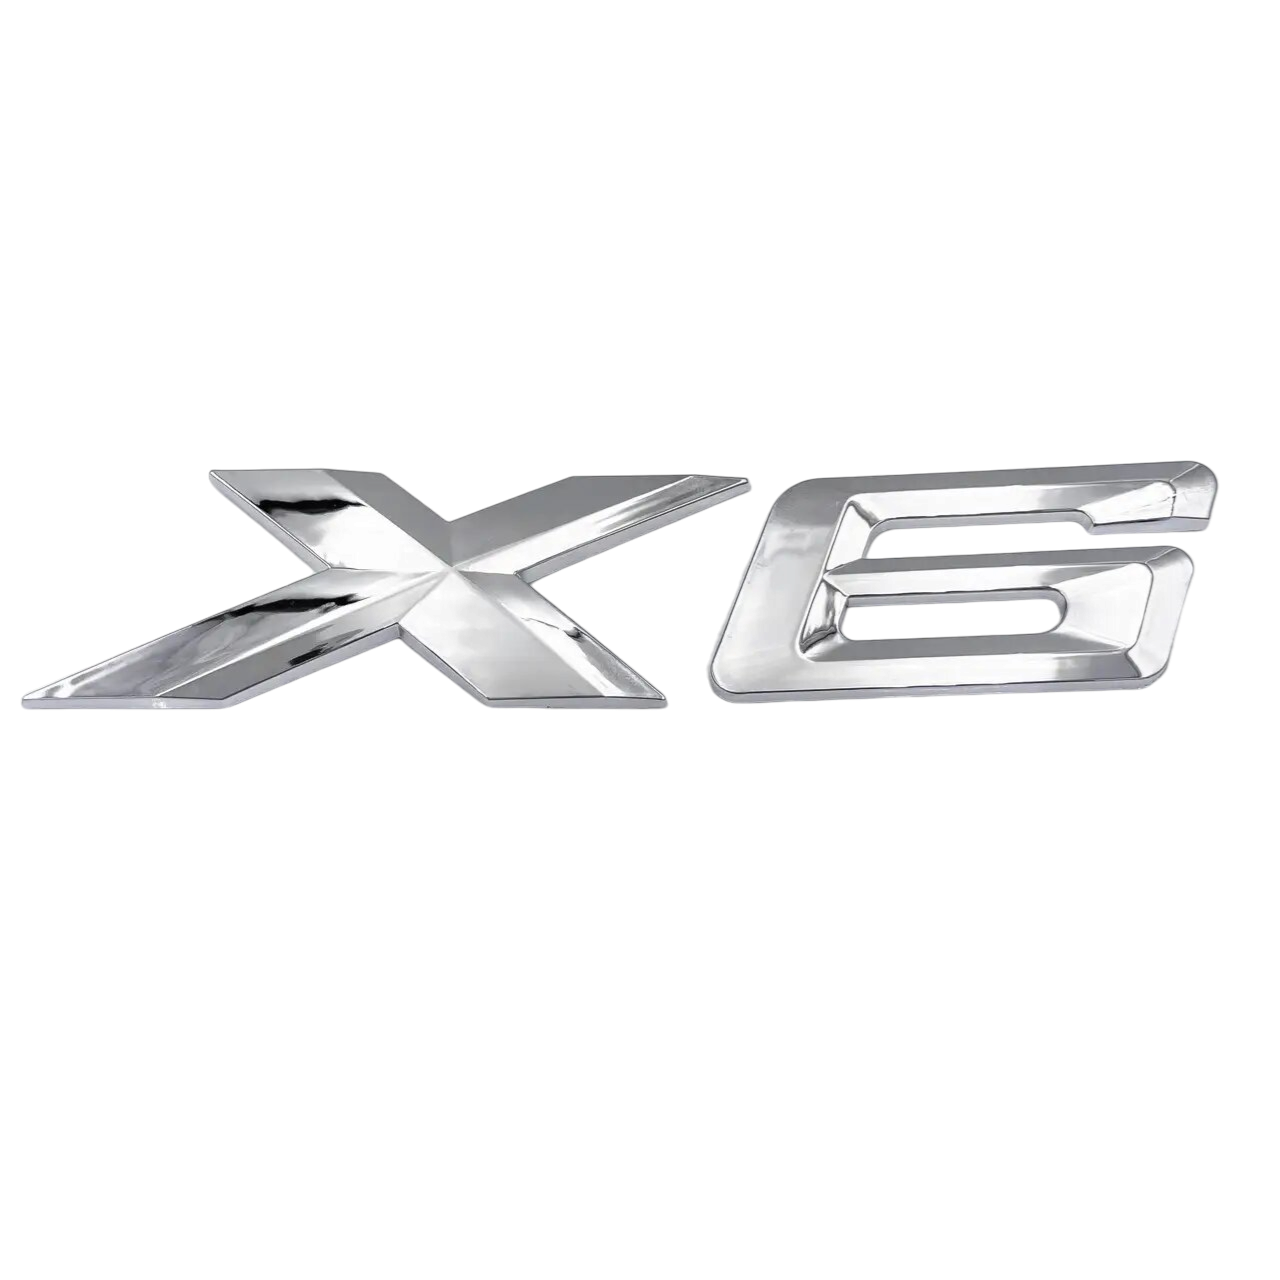 BMW F86 X6 Genuine Rear Trunk Emblem "X6" Lettering Decal Badge NEW Logo 2015+